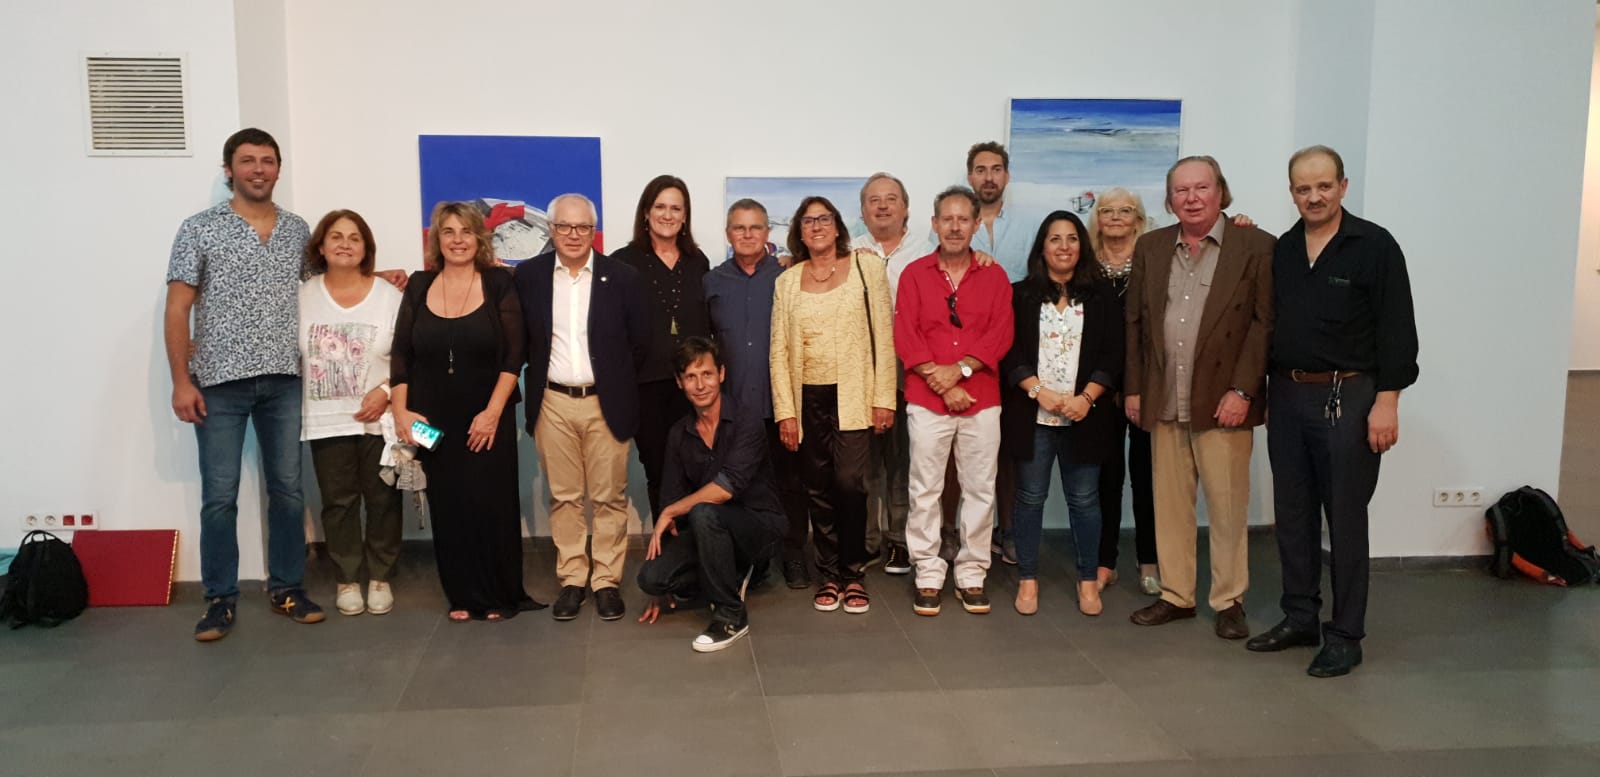 La Fundació Baleària y el Instituto Cervantes exponen la obra colectiva de 25 artistas mediterráneos en Orán